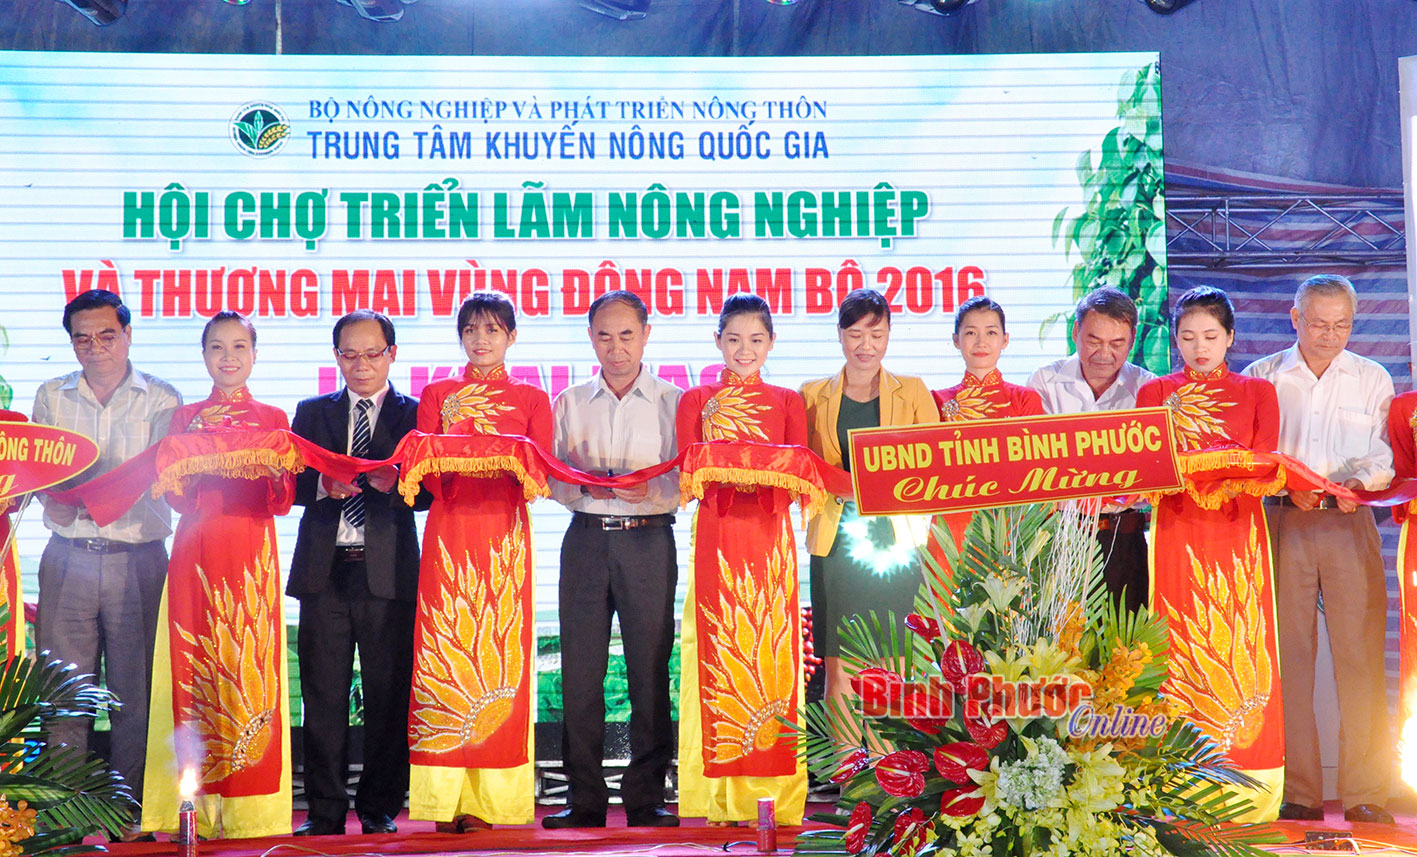 Đại diện Bộ Nông nghiệp và Phát triển Nông thôn cùng lãnh đạo tỉnh Bình Phước cắt băng khai mạc hội chợ 